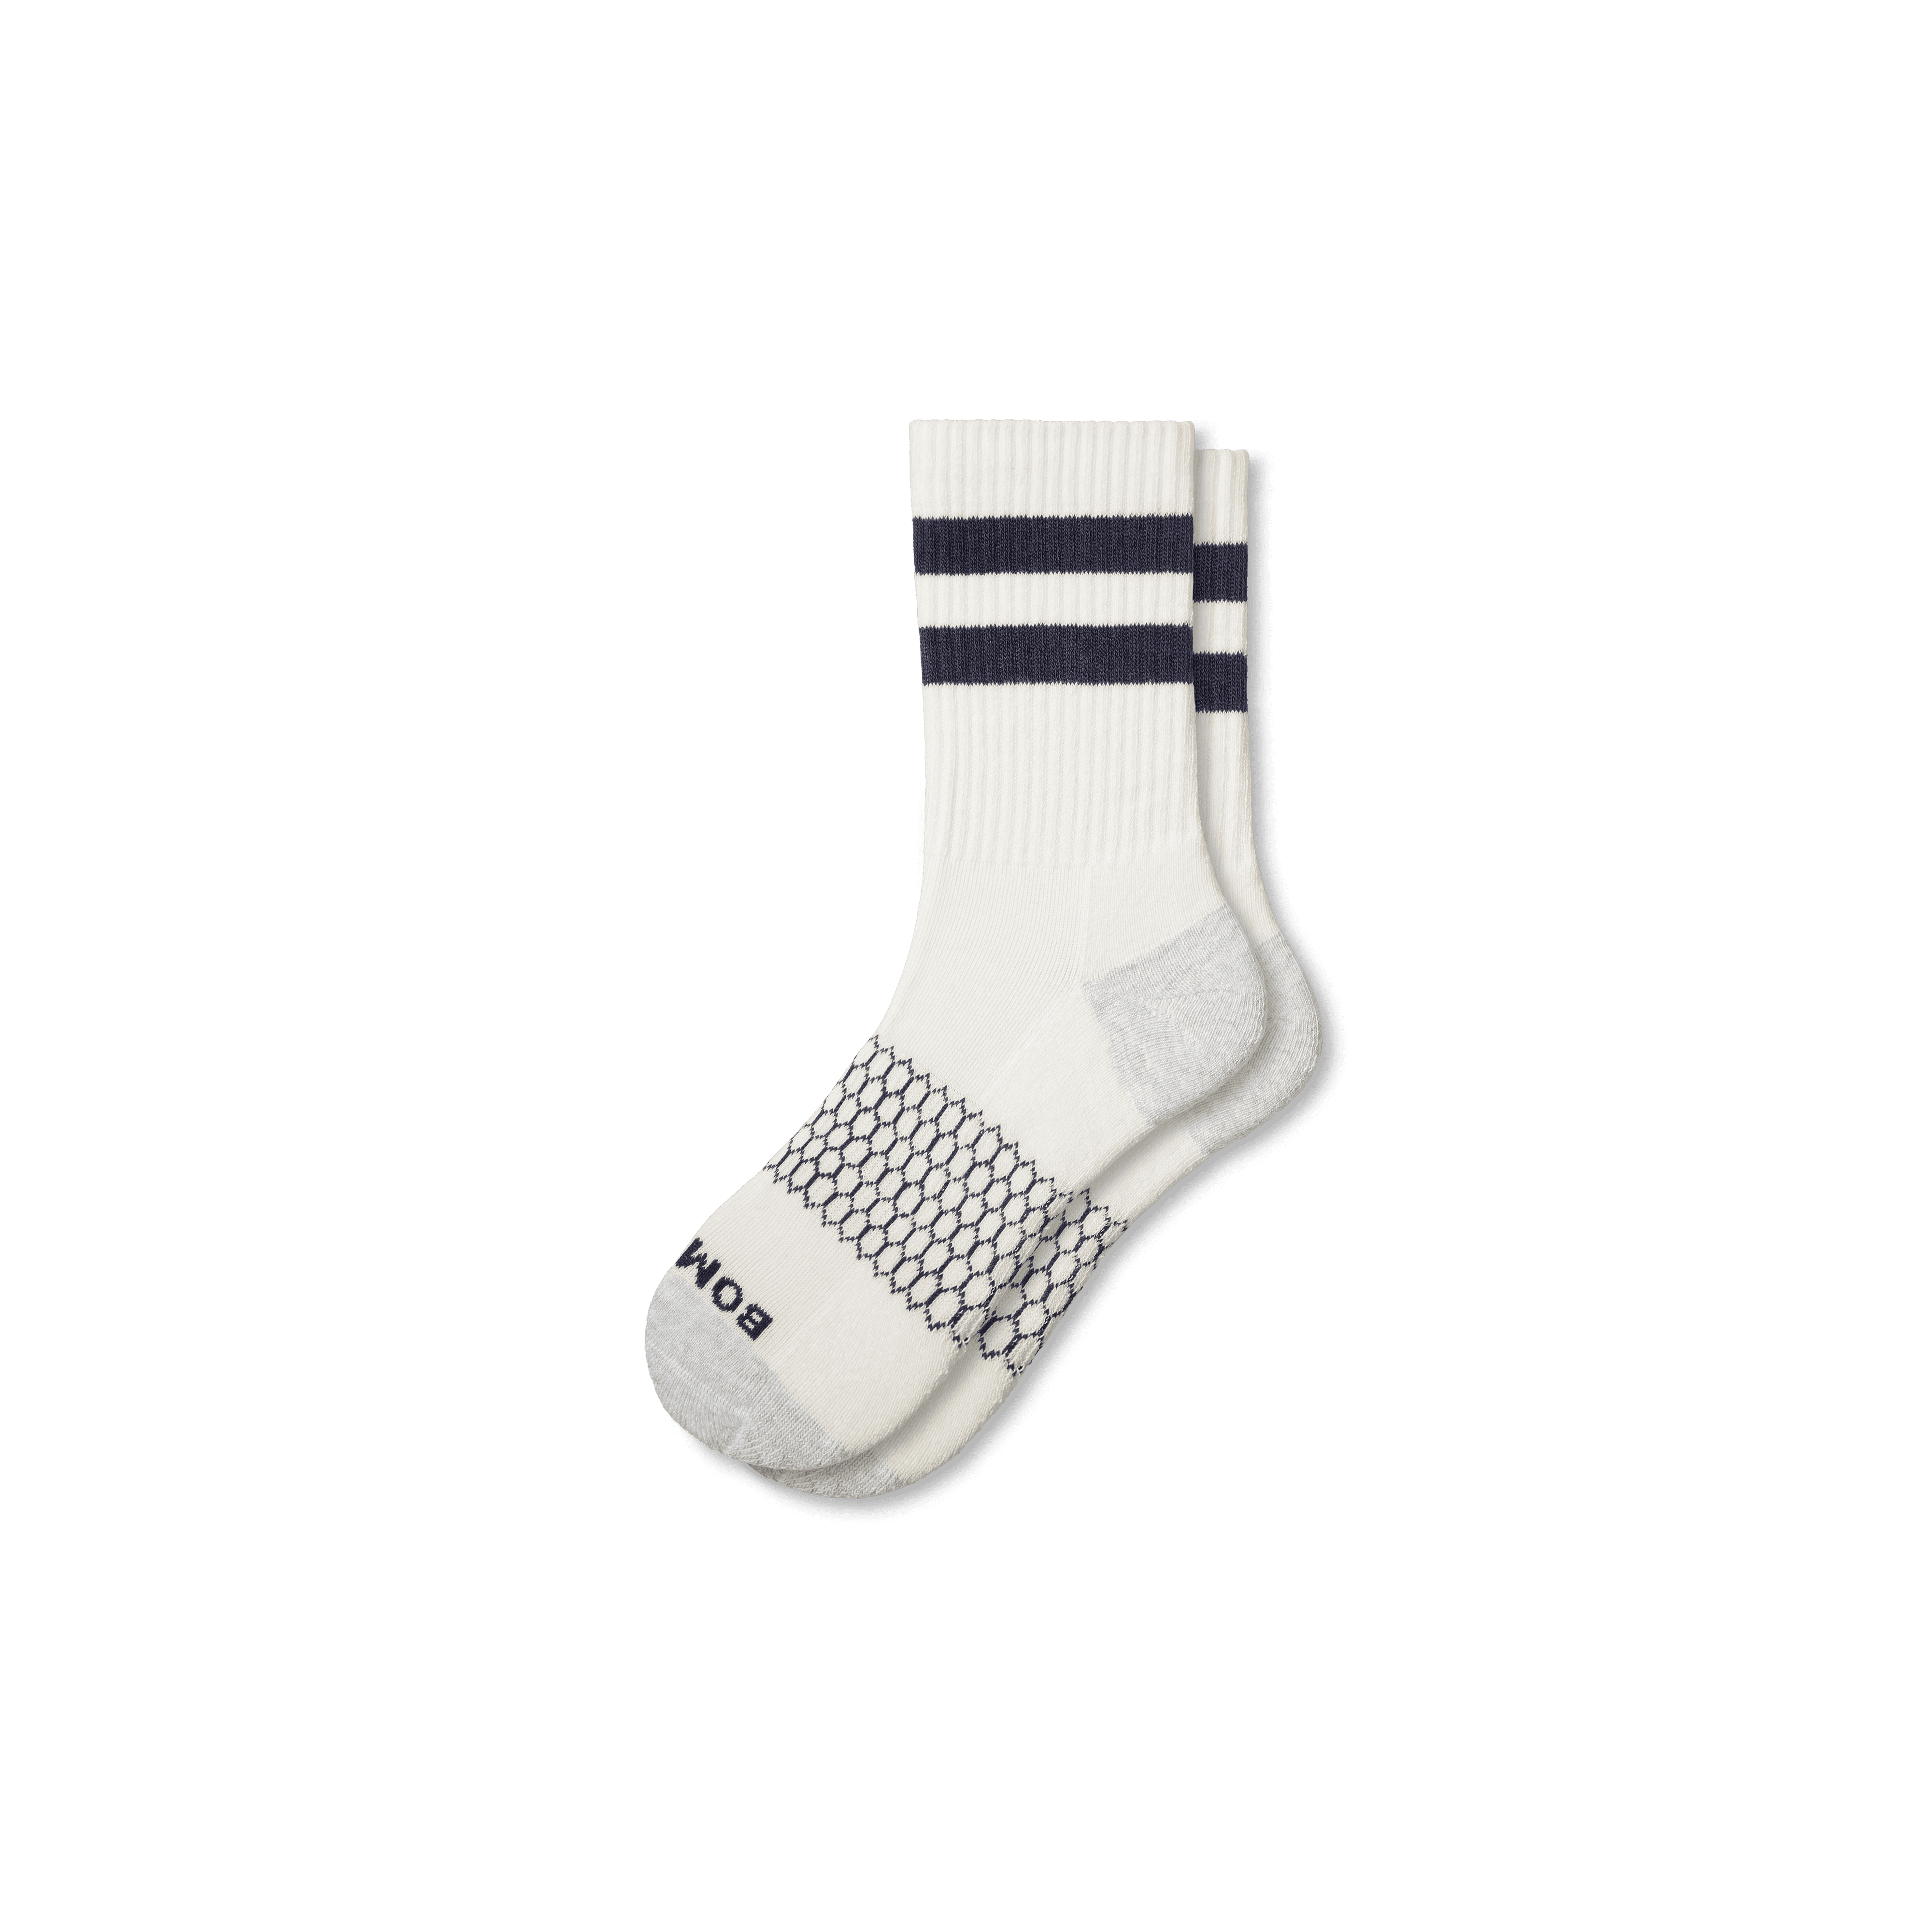 Bombas Vintage Stripes Half Calf Socks In Navy